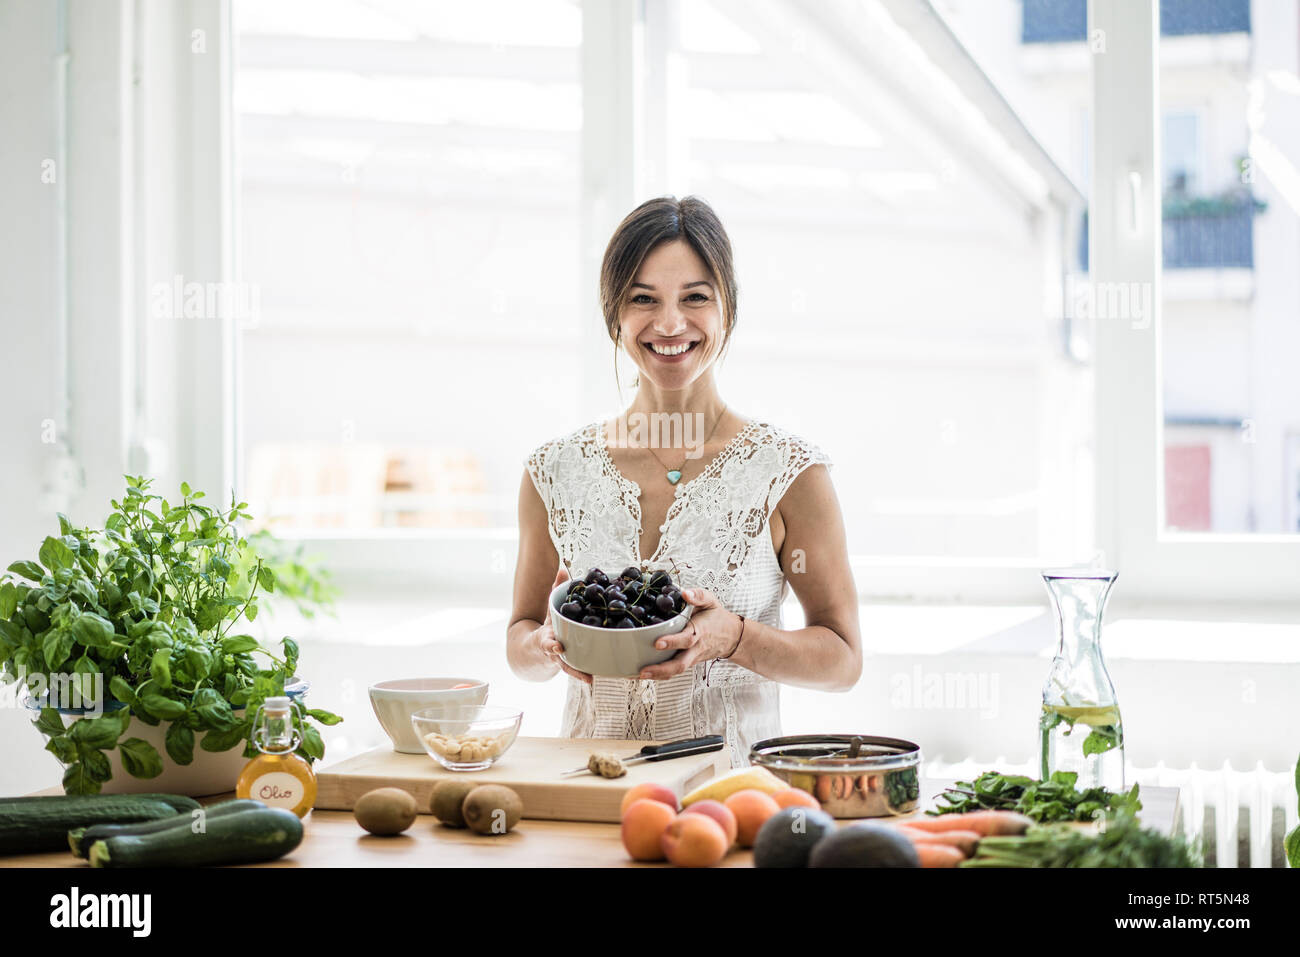 La donna la preparazione di un alimento sano nella sua cucina, tenendo una ciotola di ciliegie Foto Stock